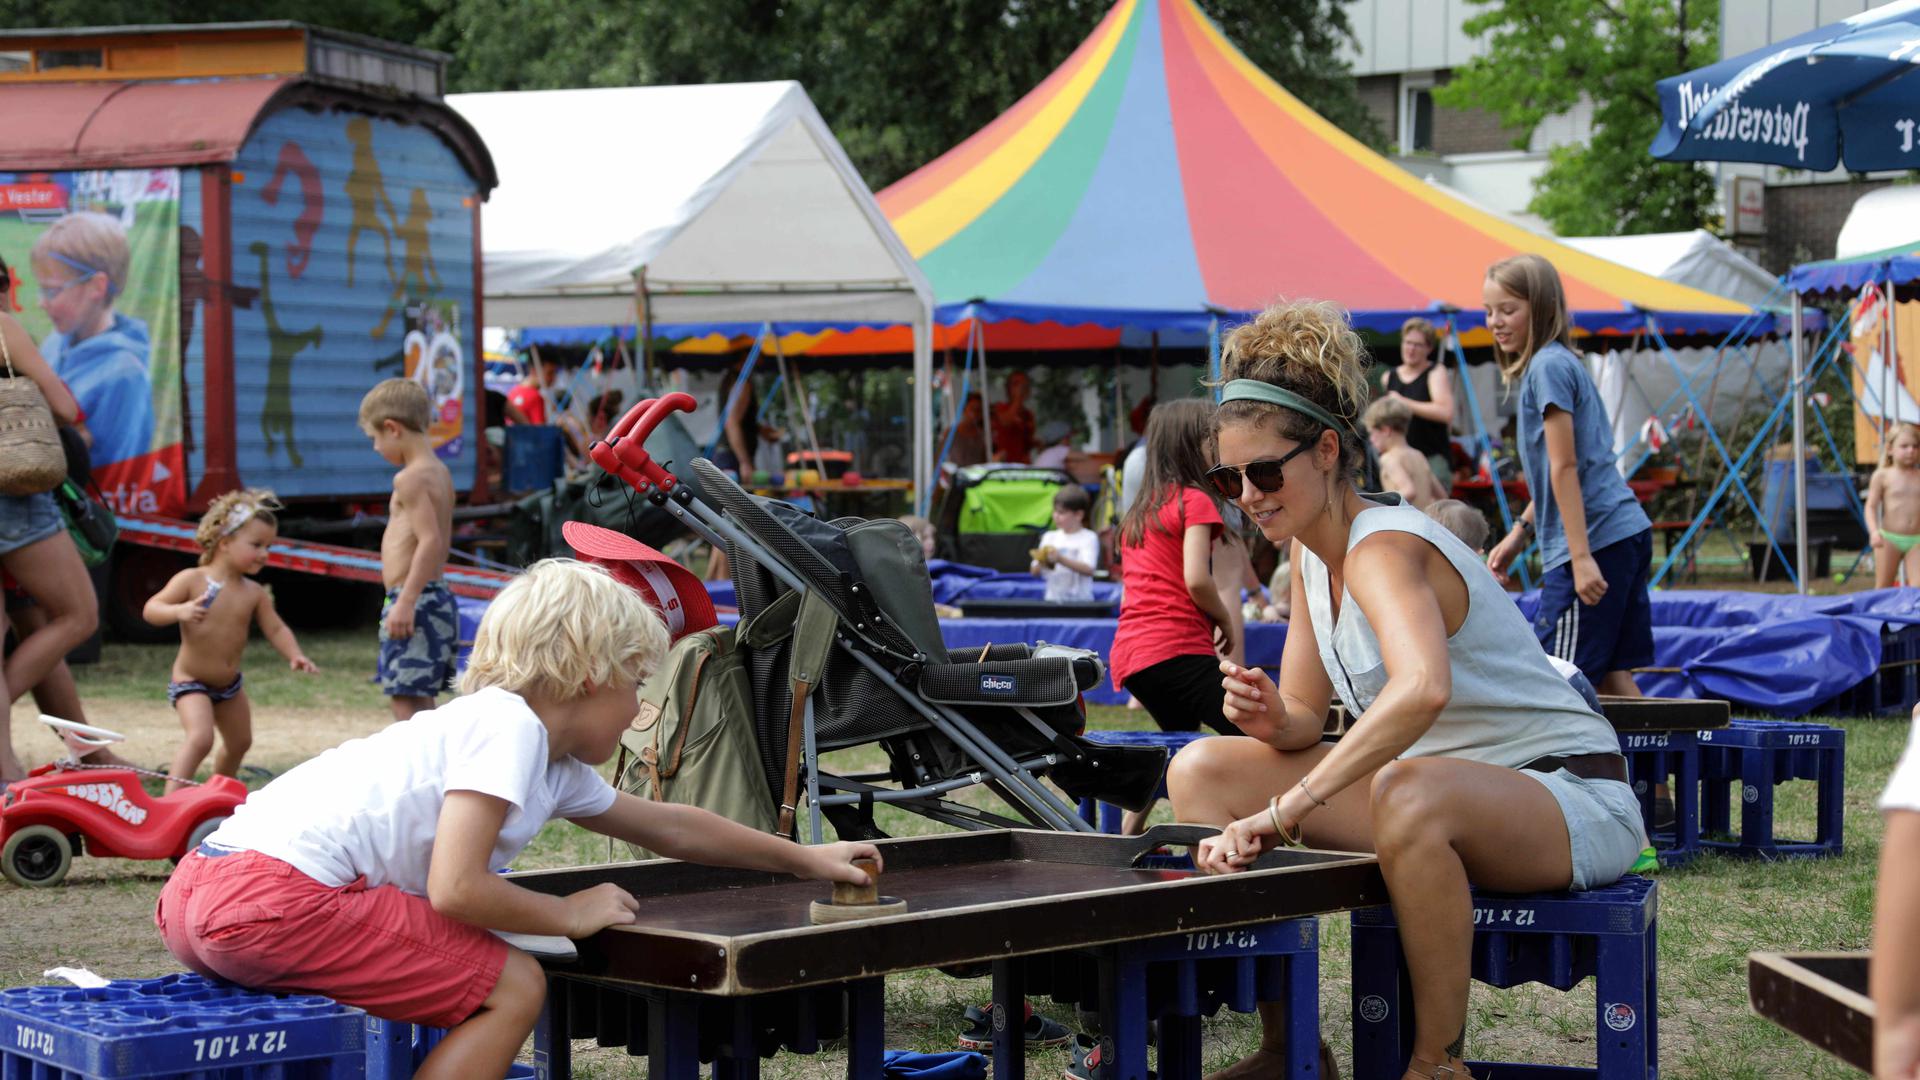 Spannung, Spiel und Bastelspaß bietet der Stadtjugendausschuss kleinen Festivalbesuchern auf seinem "Mobi-Rummelplatz" bei der Feldbühne. Foto: Joerg Donecker